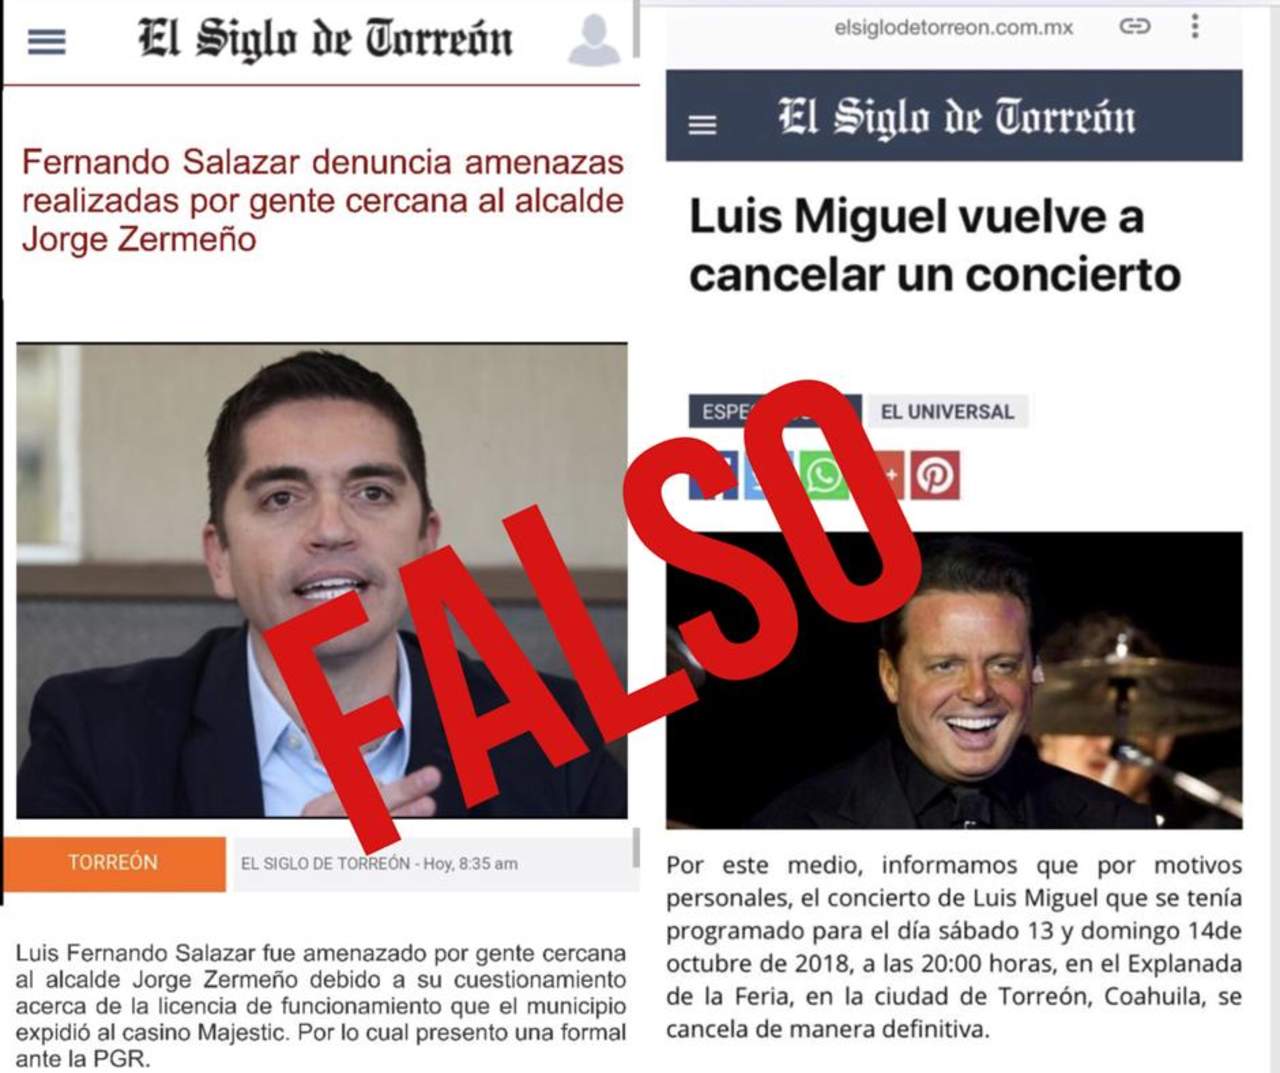 Utilizan diseño de El Siglo para difundir noticias falsas